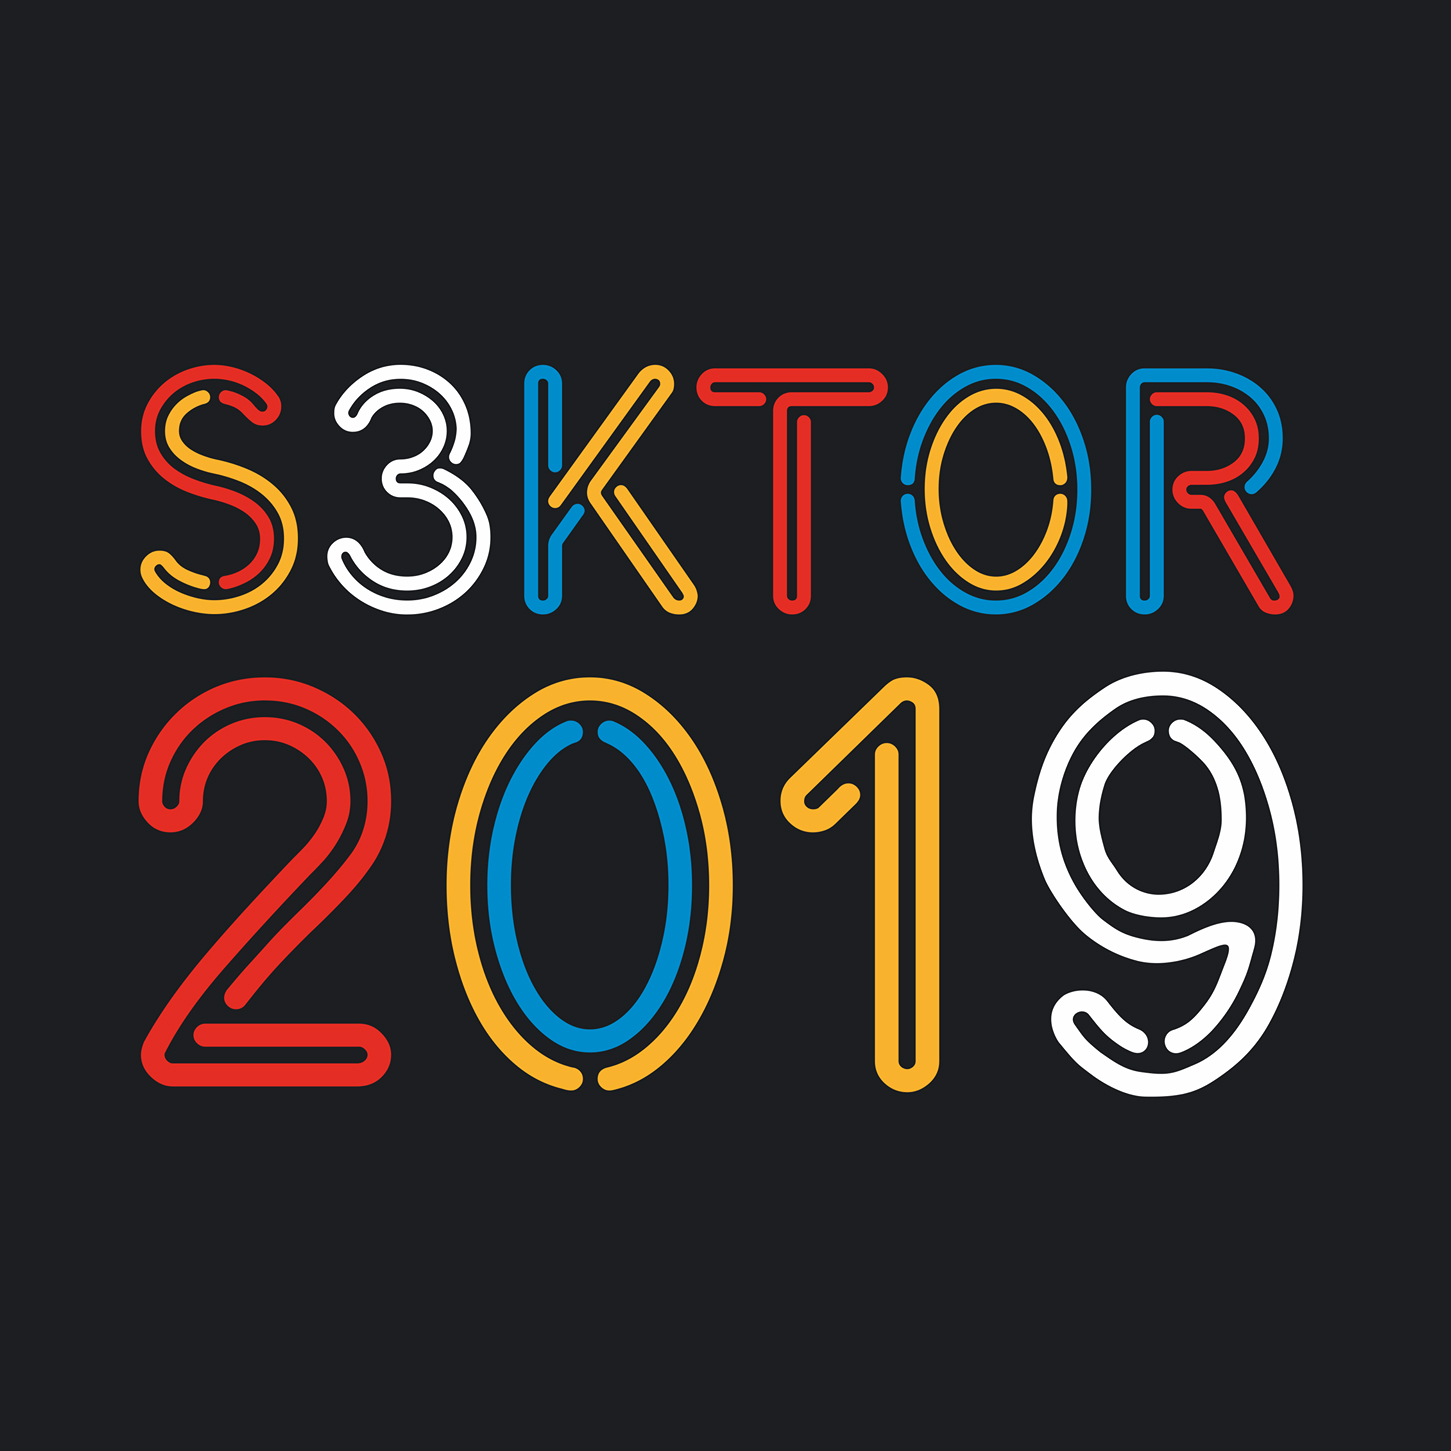 grafika zawierająca tekst "s3ktor 2019"